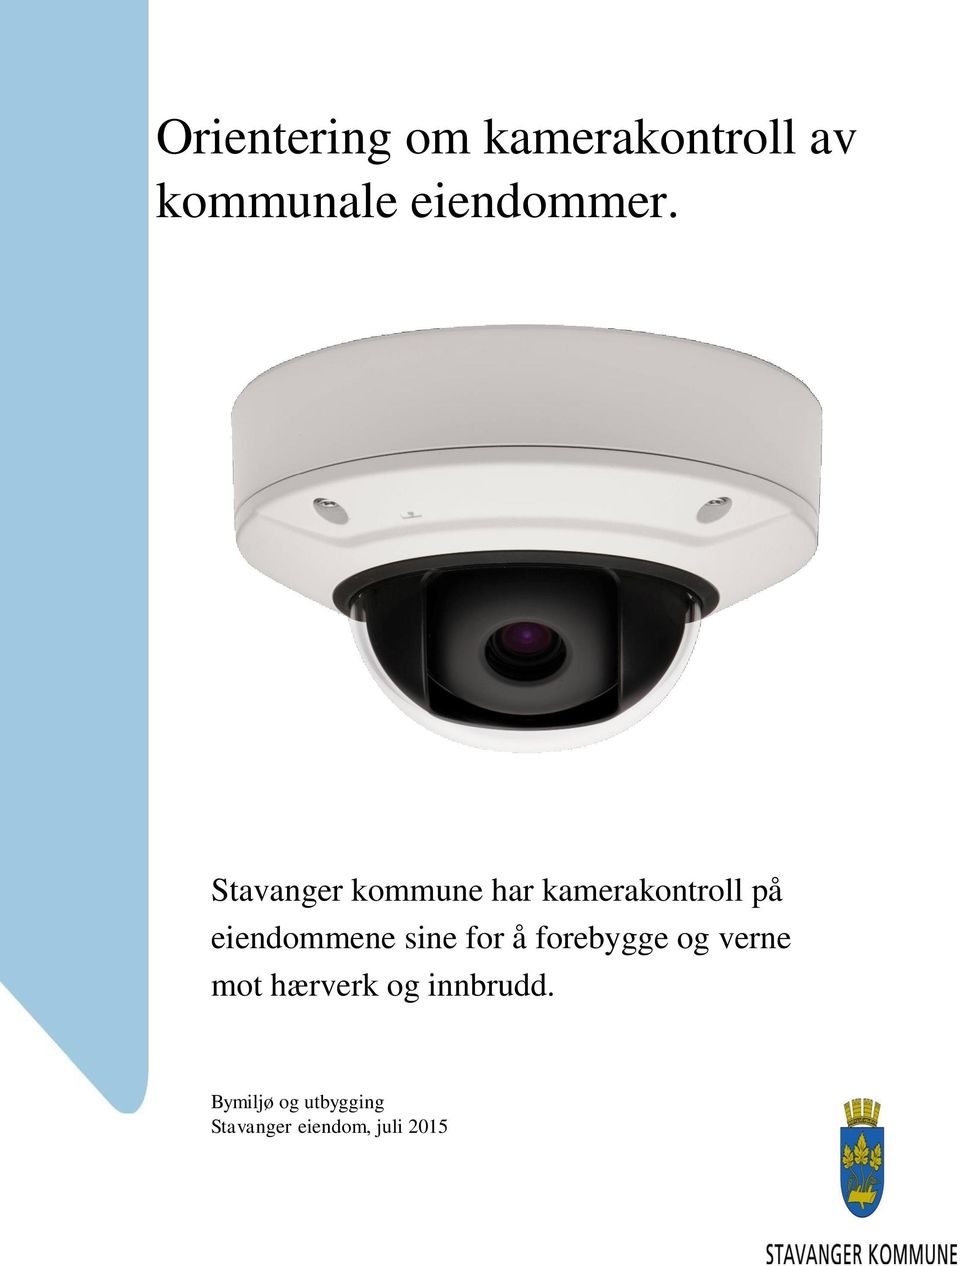 Stavanger kommune har kamerakontroll på eiendommene